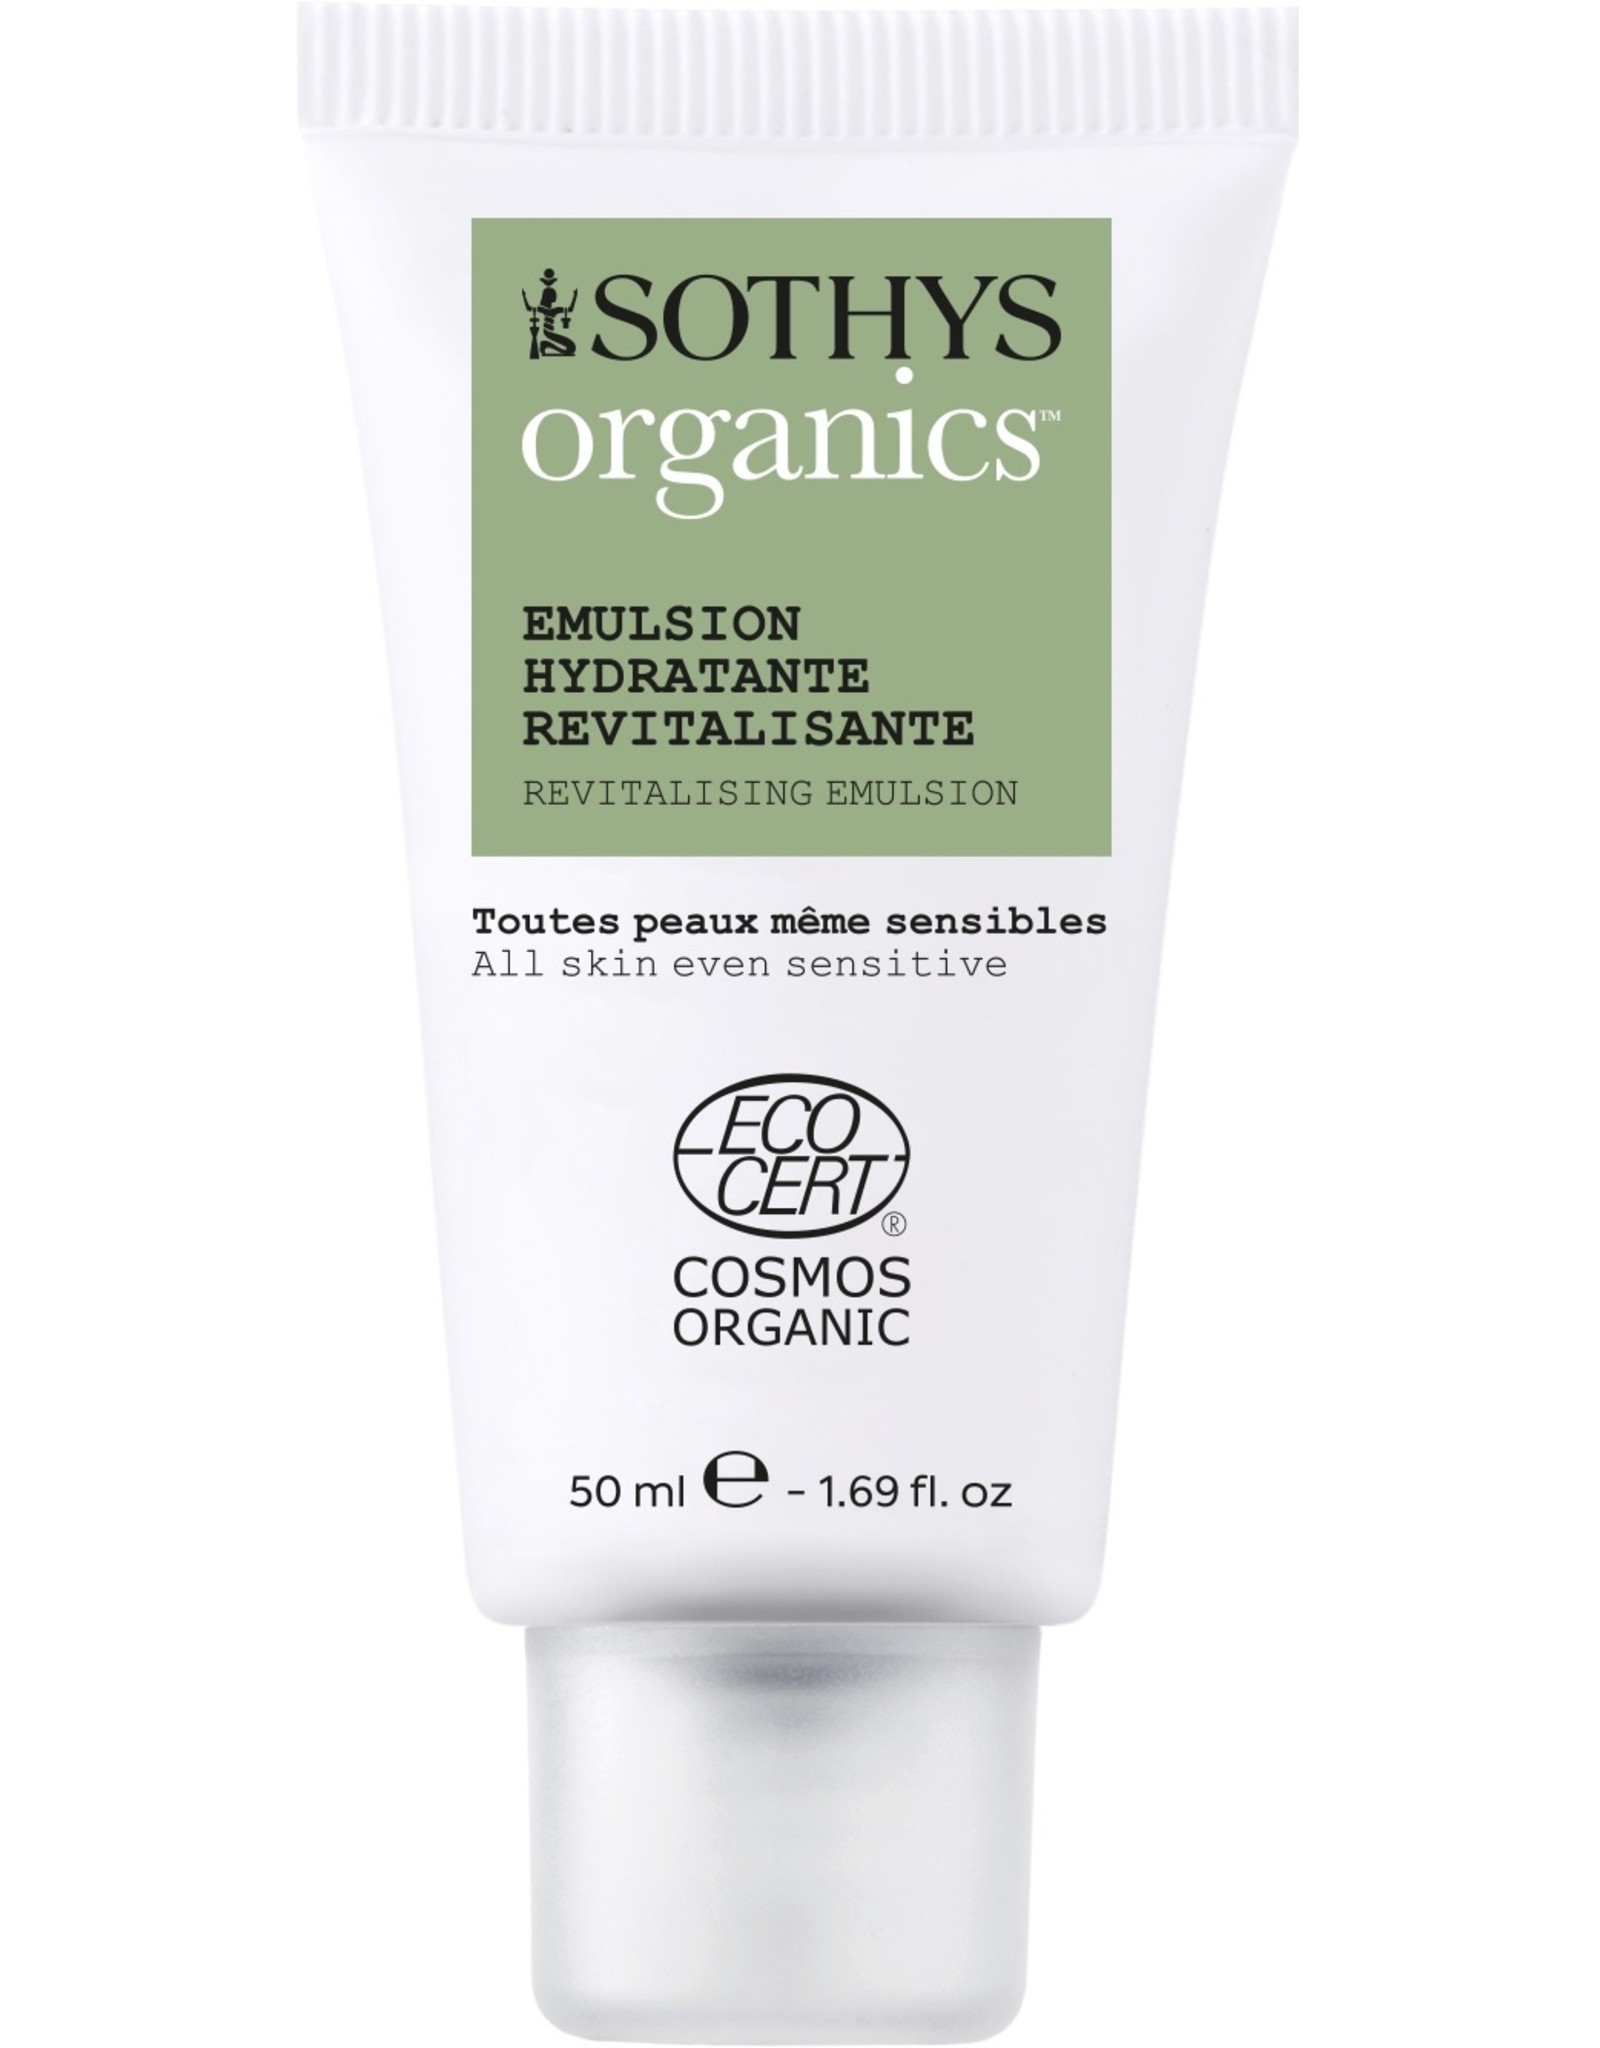 SOTHYS Hydrating emulsion -  Sothys Organics®